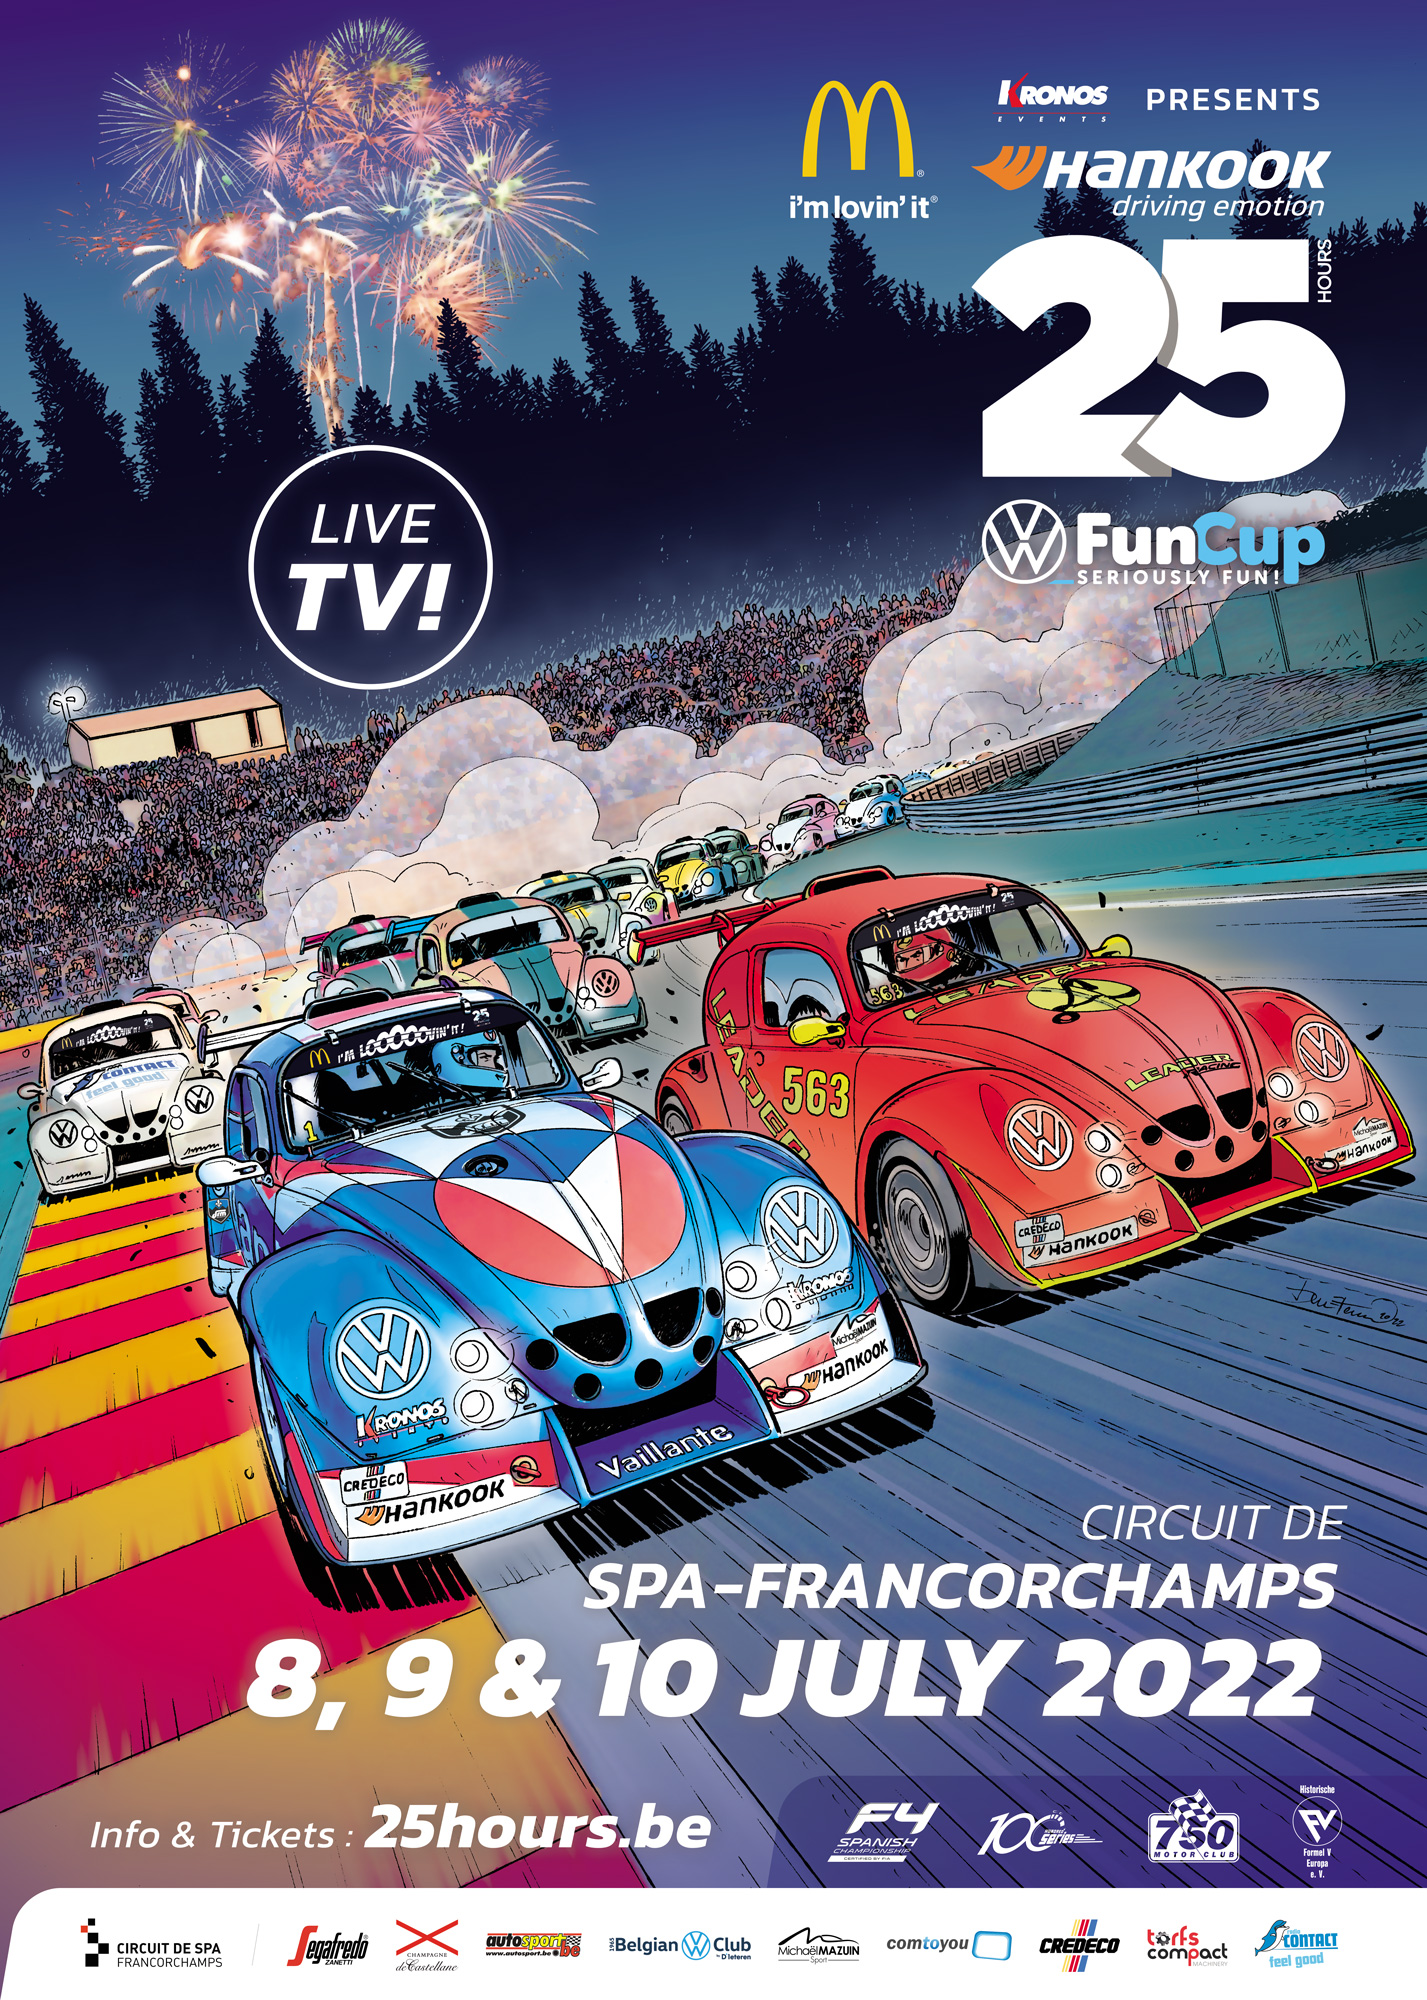 image 1 - Dit is de affiche van de Hankook 25 Hours VW Fun Cup!